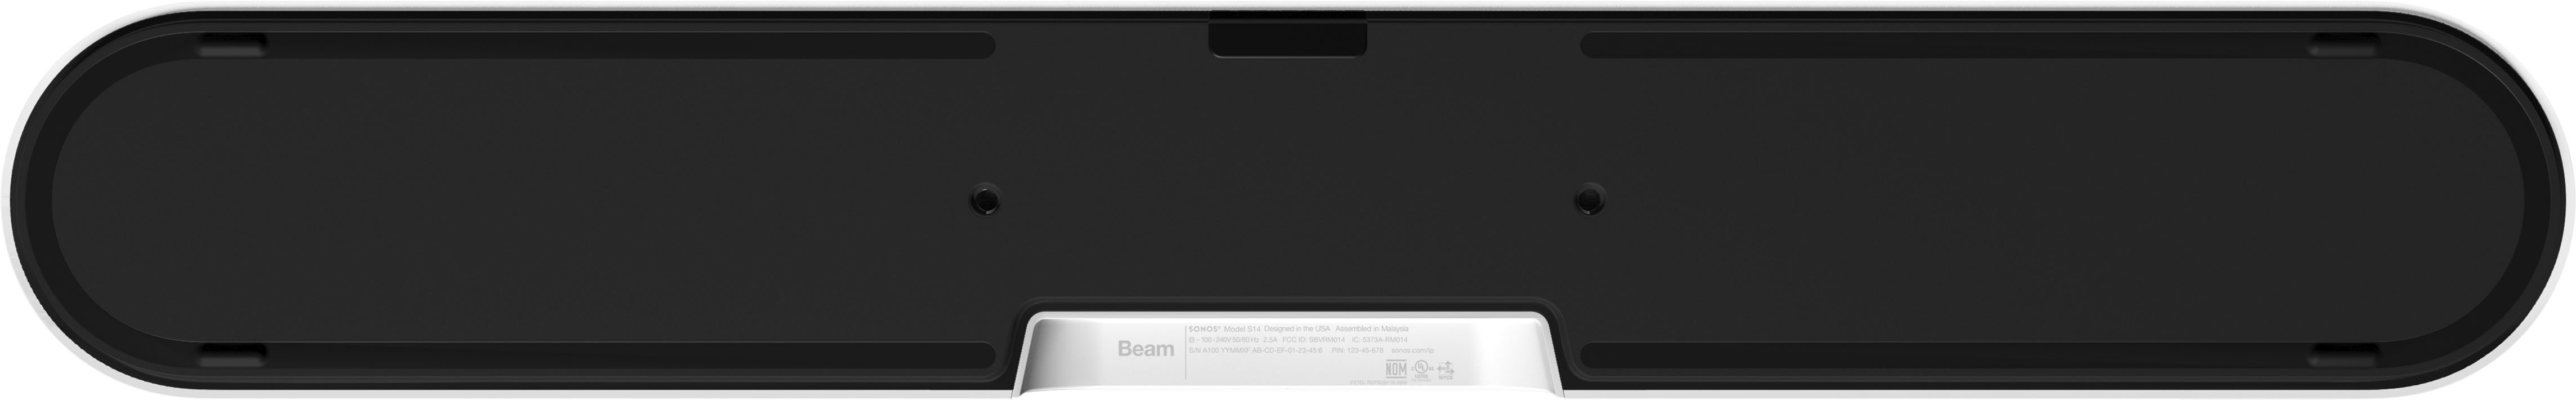 Sonos Beam (Gen 2) White BEAM2US1 - Best Buy